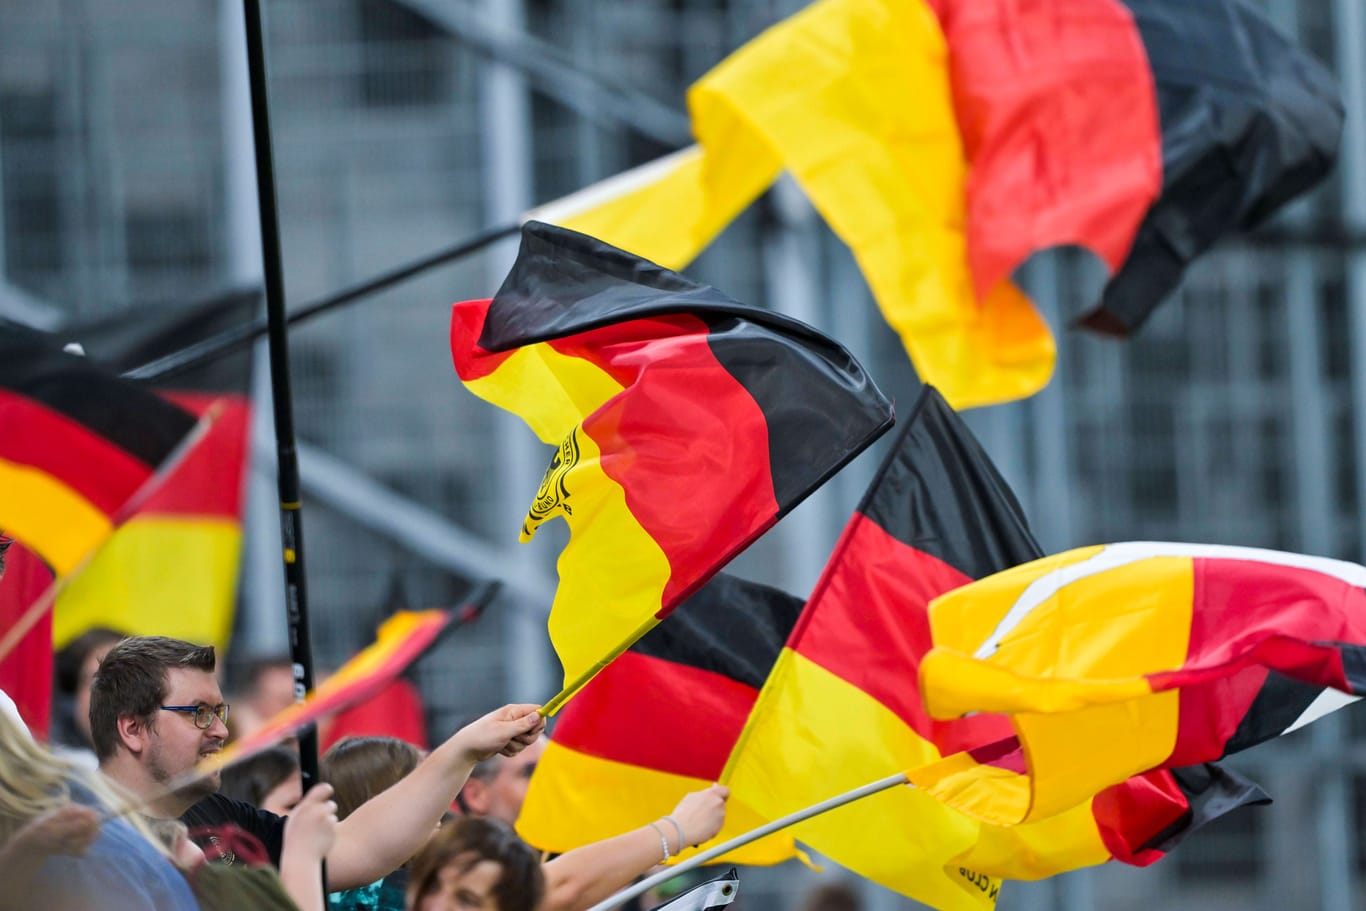 Deutschlandflaggen bei einem Spiel (Archivbild): In Berlin soll das Hissen von Deutschlandflaggen an Polizeiautos auch in diesem Jahr verboten bleiben.